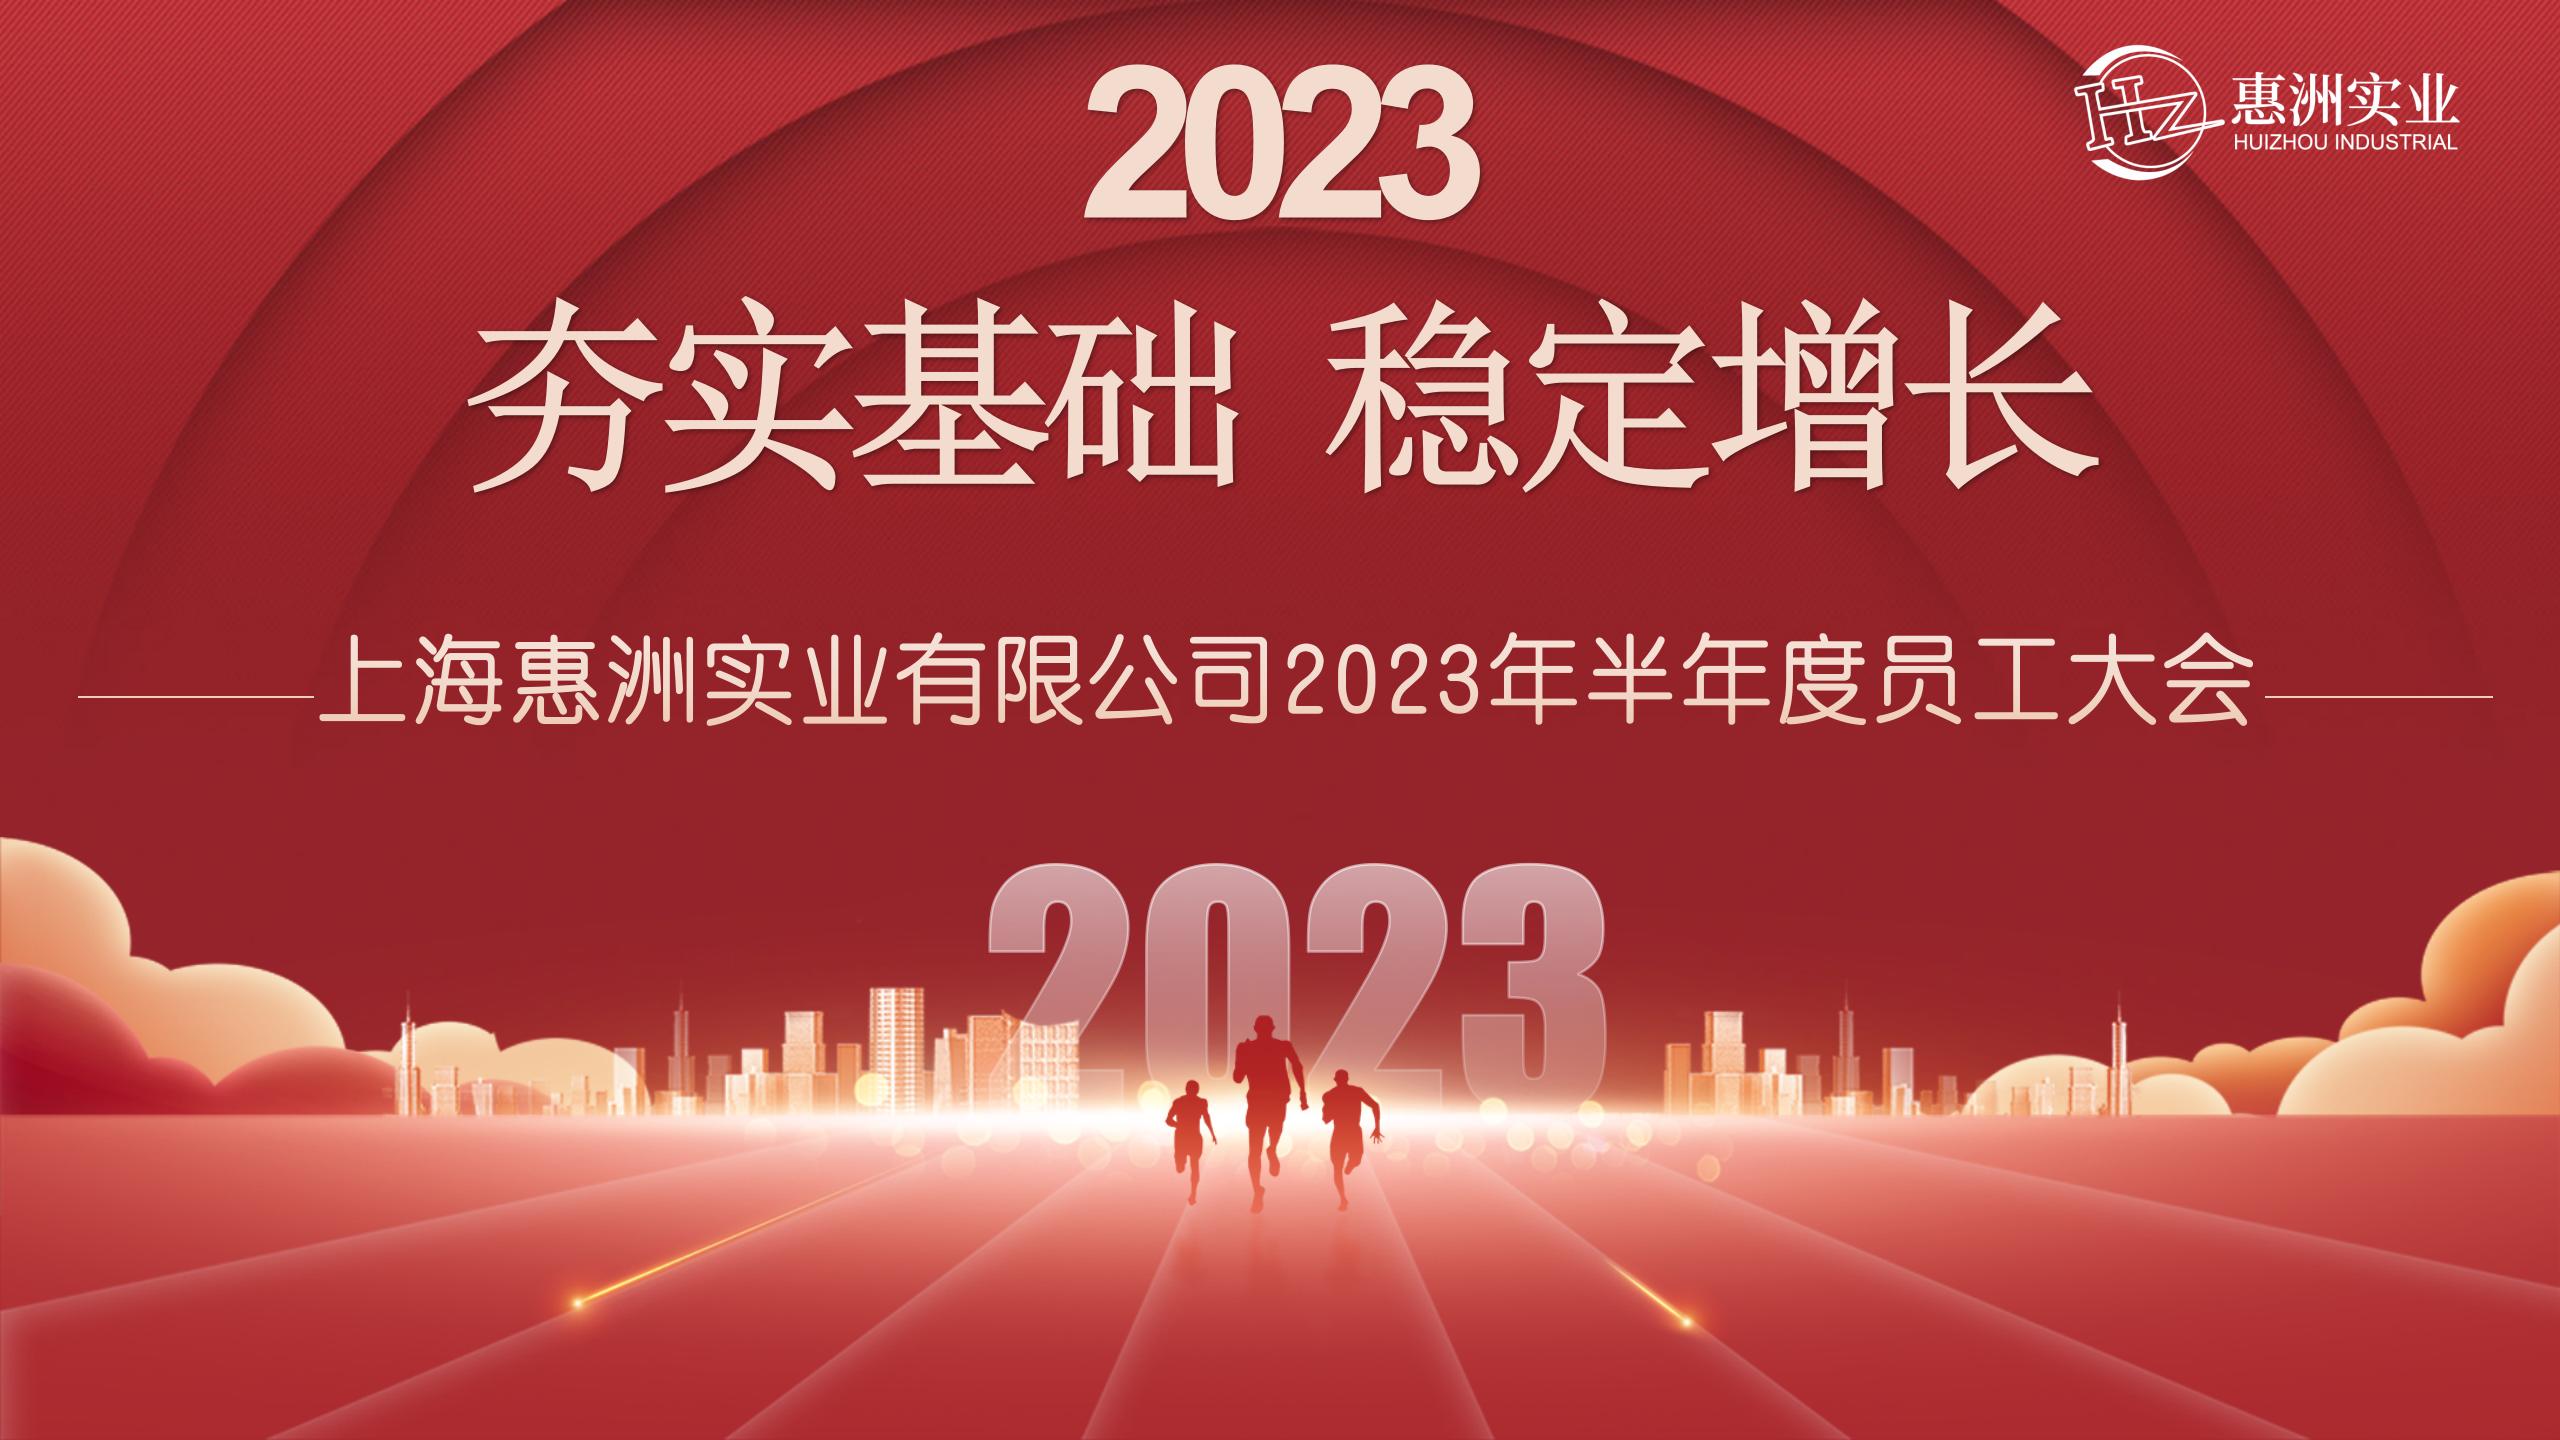 Reunión semestral del personal de Huizhou 2023 |“Fundamentos, crecimiento estable”